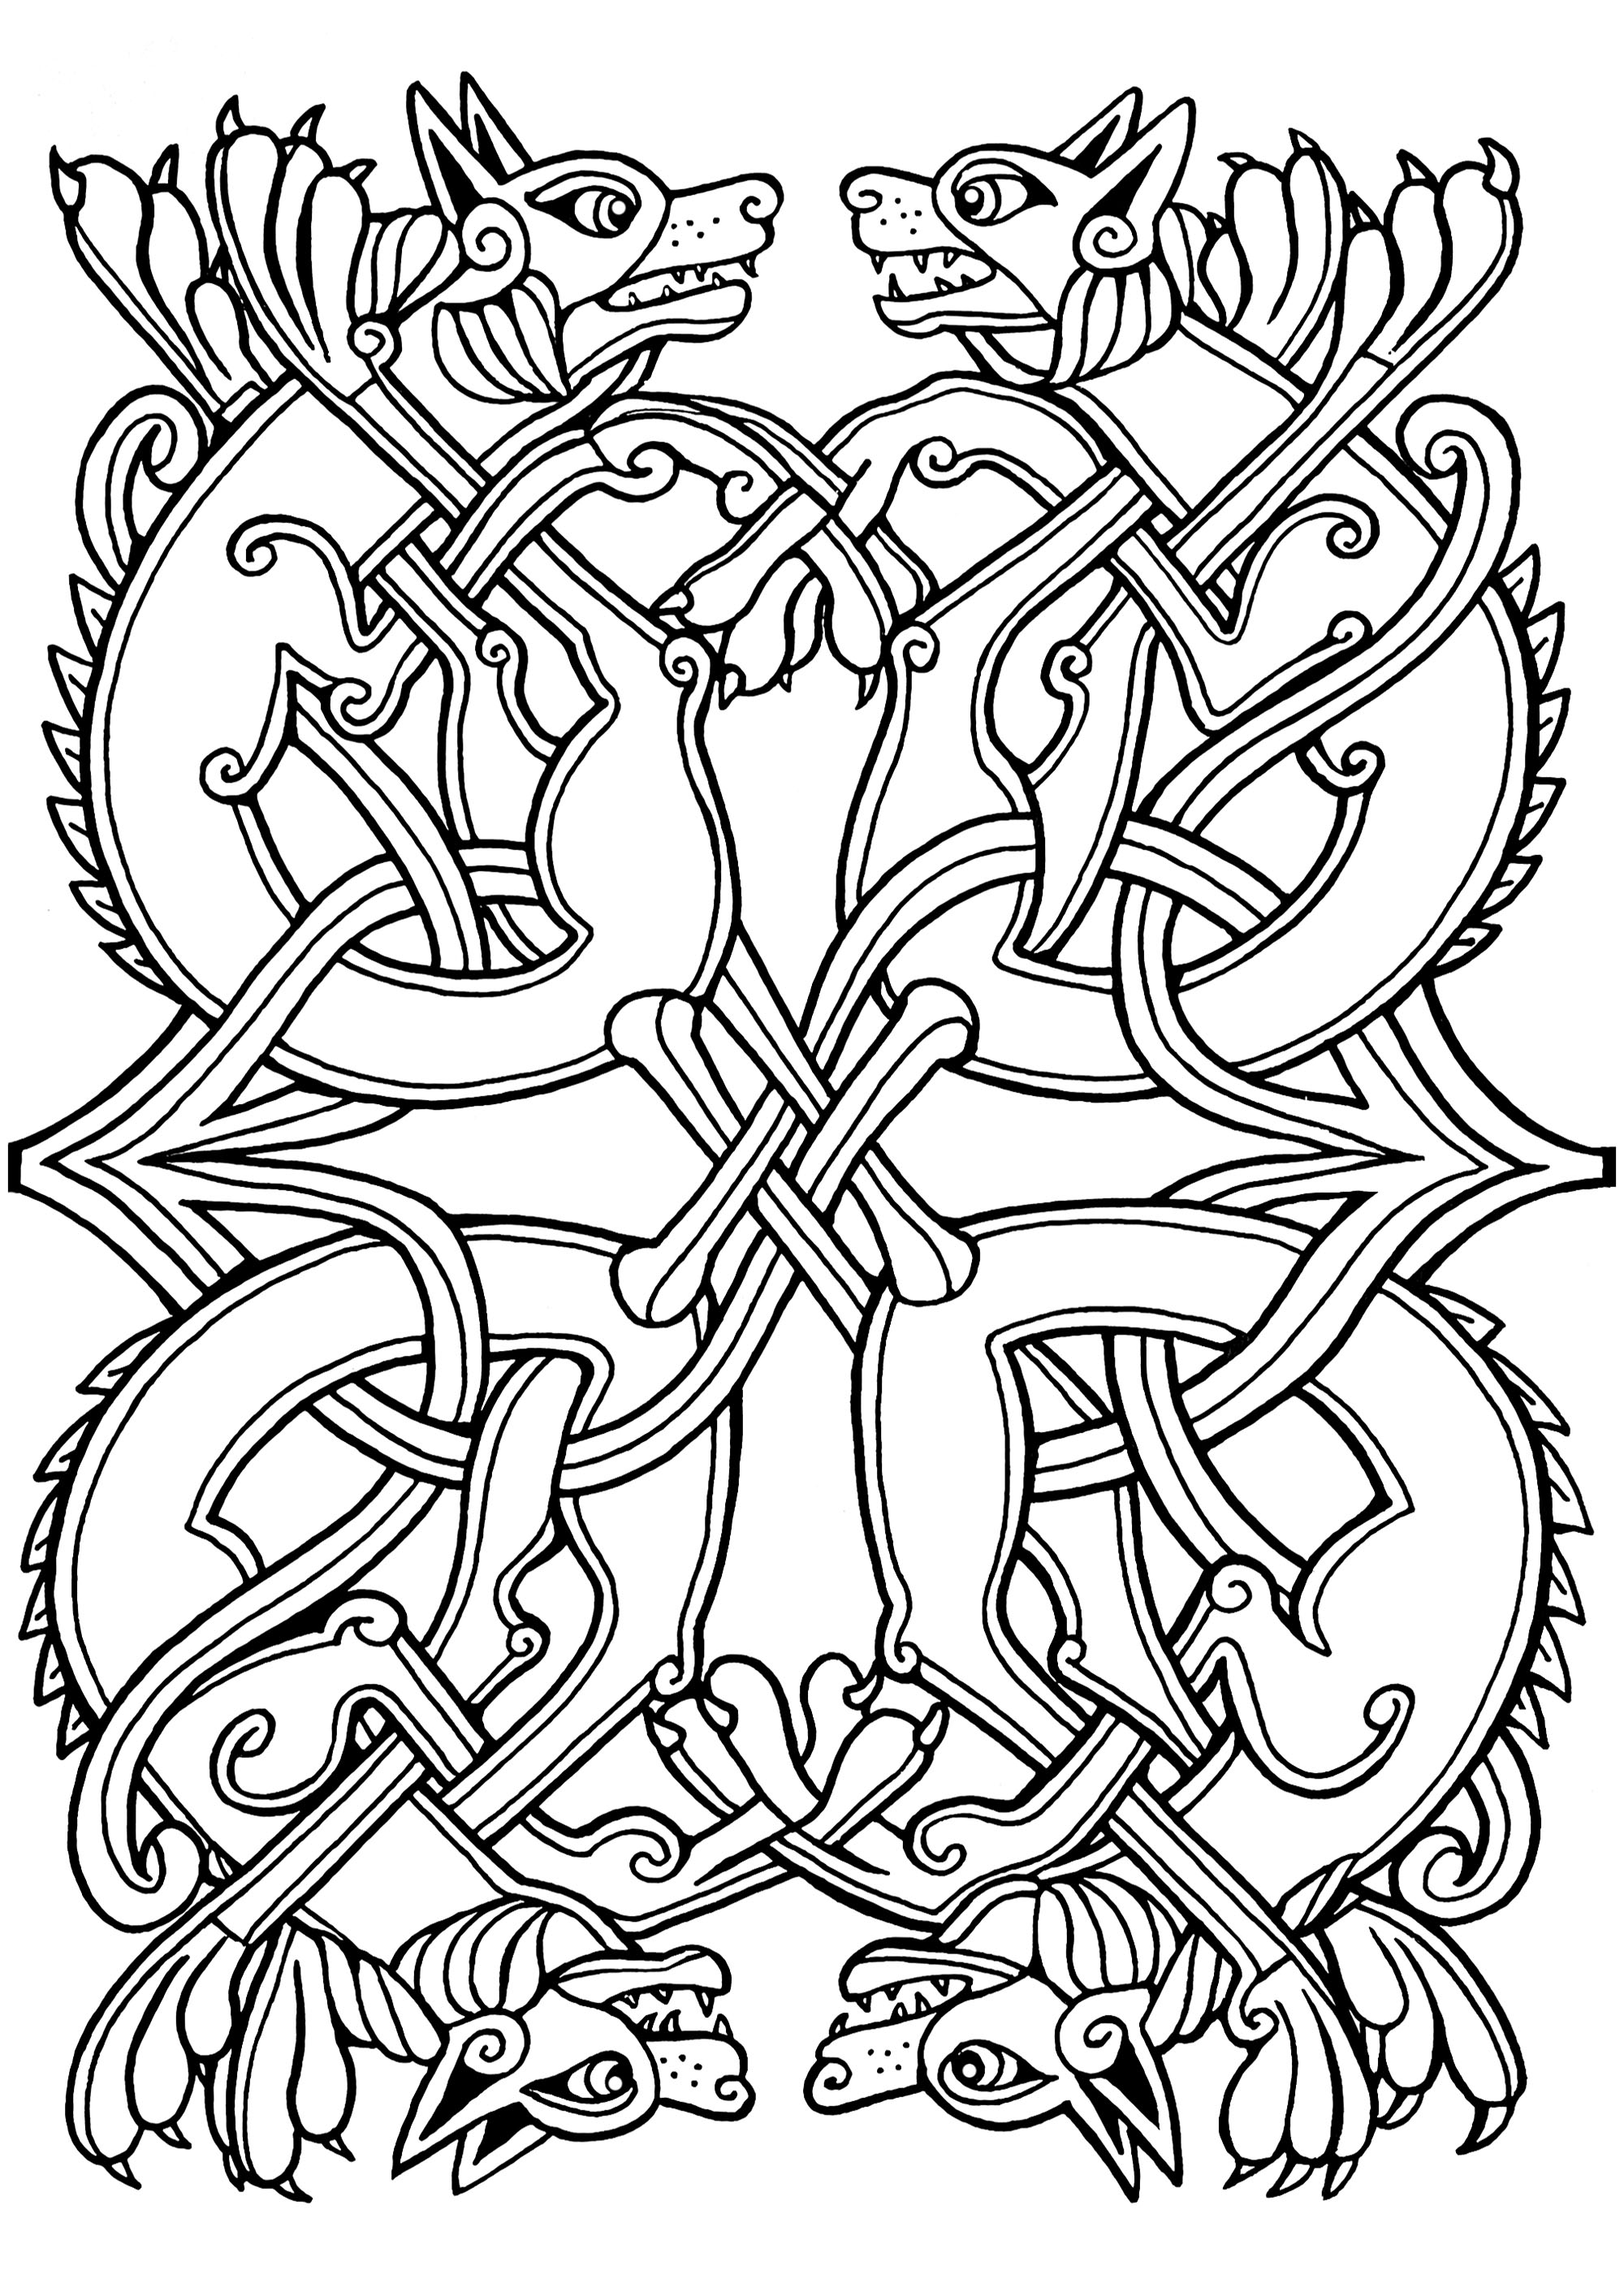 Disegno celtico di cani con motivi celtici intrecciati. Questa illustrazione assomiglia a quelle presenti in manoscritti medievali come il Libro di Kells.